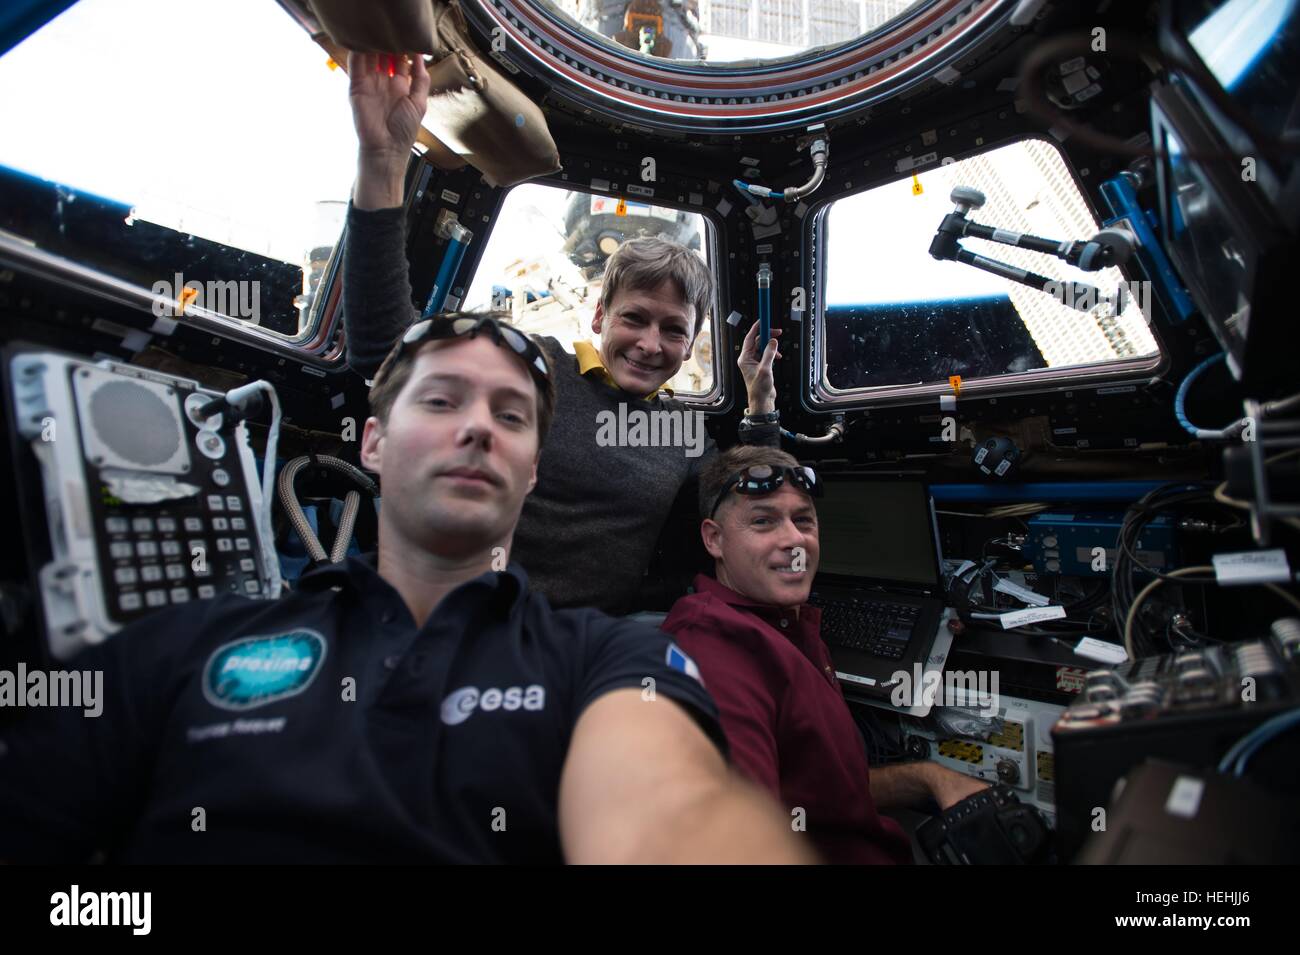 La NASA Expedition 50 membri di equipaggio astronauti Shane Kimbrough e Peggy Whitson della NASA e astronauta francese Thomas Pesquet dell'Agenzia spaziale europea subiscono robotics formazione dentro la stazione spaziale internazionale Cupola Dicembre 6, 2016 in orbita intorno alla terra. Foto Stock